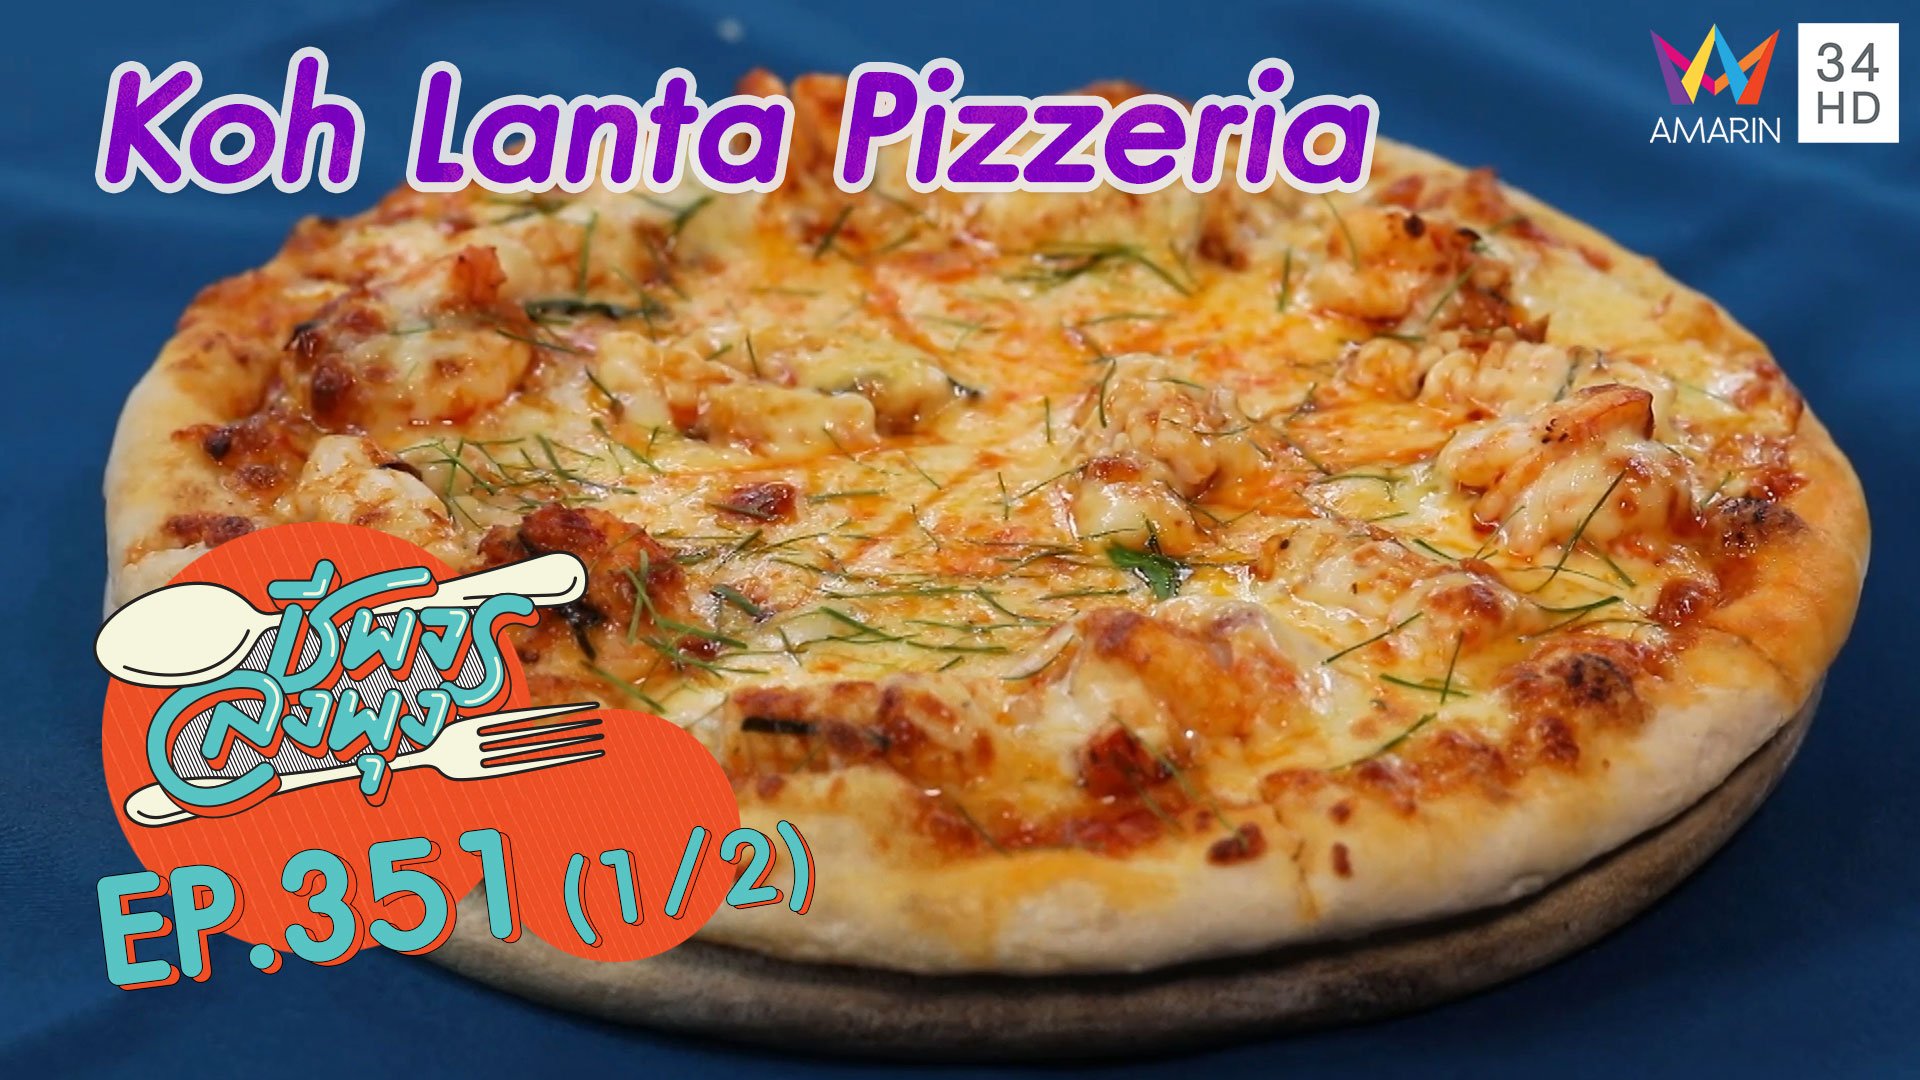 พิซซ่าอบเตาถ่านสุดว้าว @ ร้าน Koh Lanta Pizzeria | ชีพจรลงพุง | 18 ธ.ค. 64 (1/2) | AMARIN TVHD34